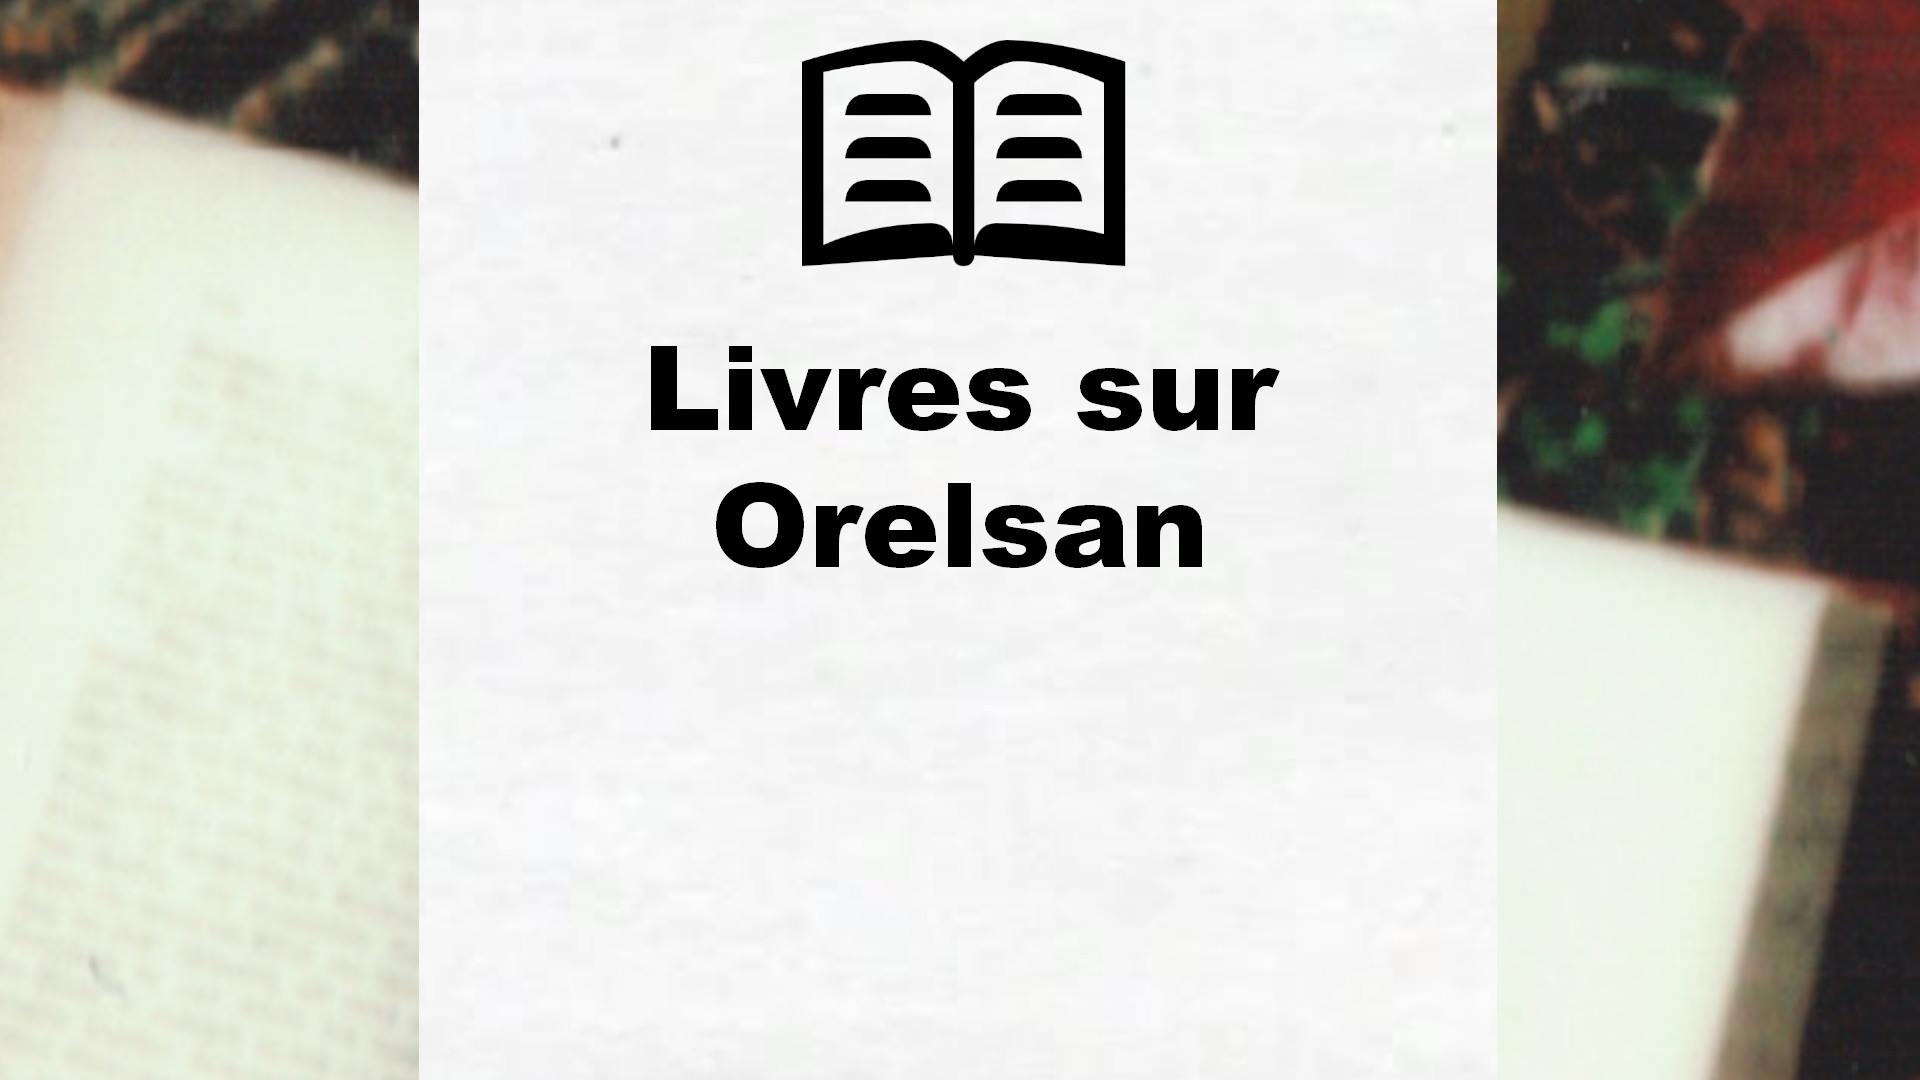 Livres sur Orelsan